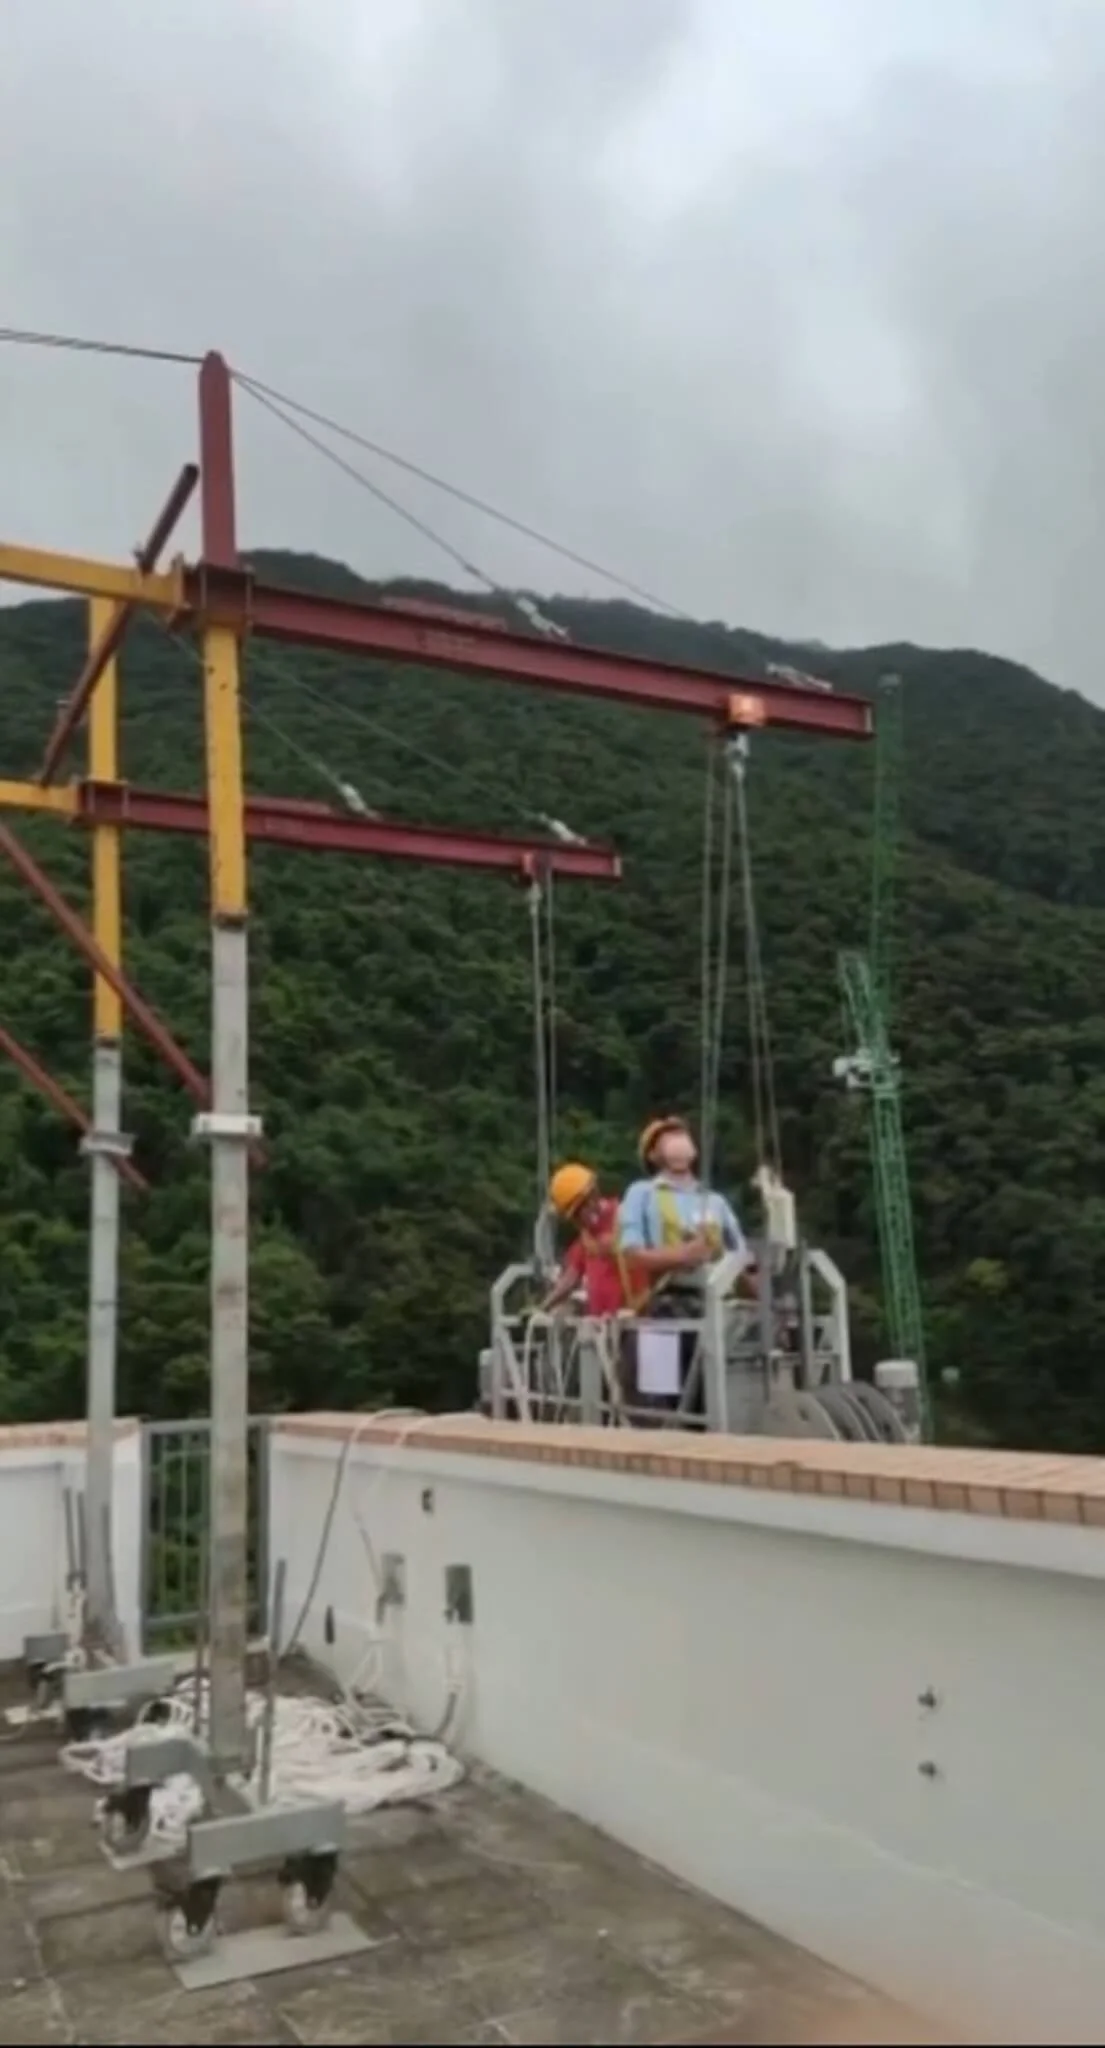 從意外片段可見，兩人在操作吊船期間，連接吊架的「車仔」飛脫。（網上片段截圖）